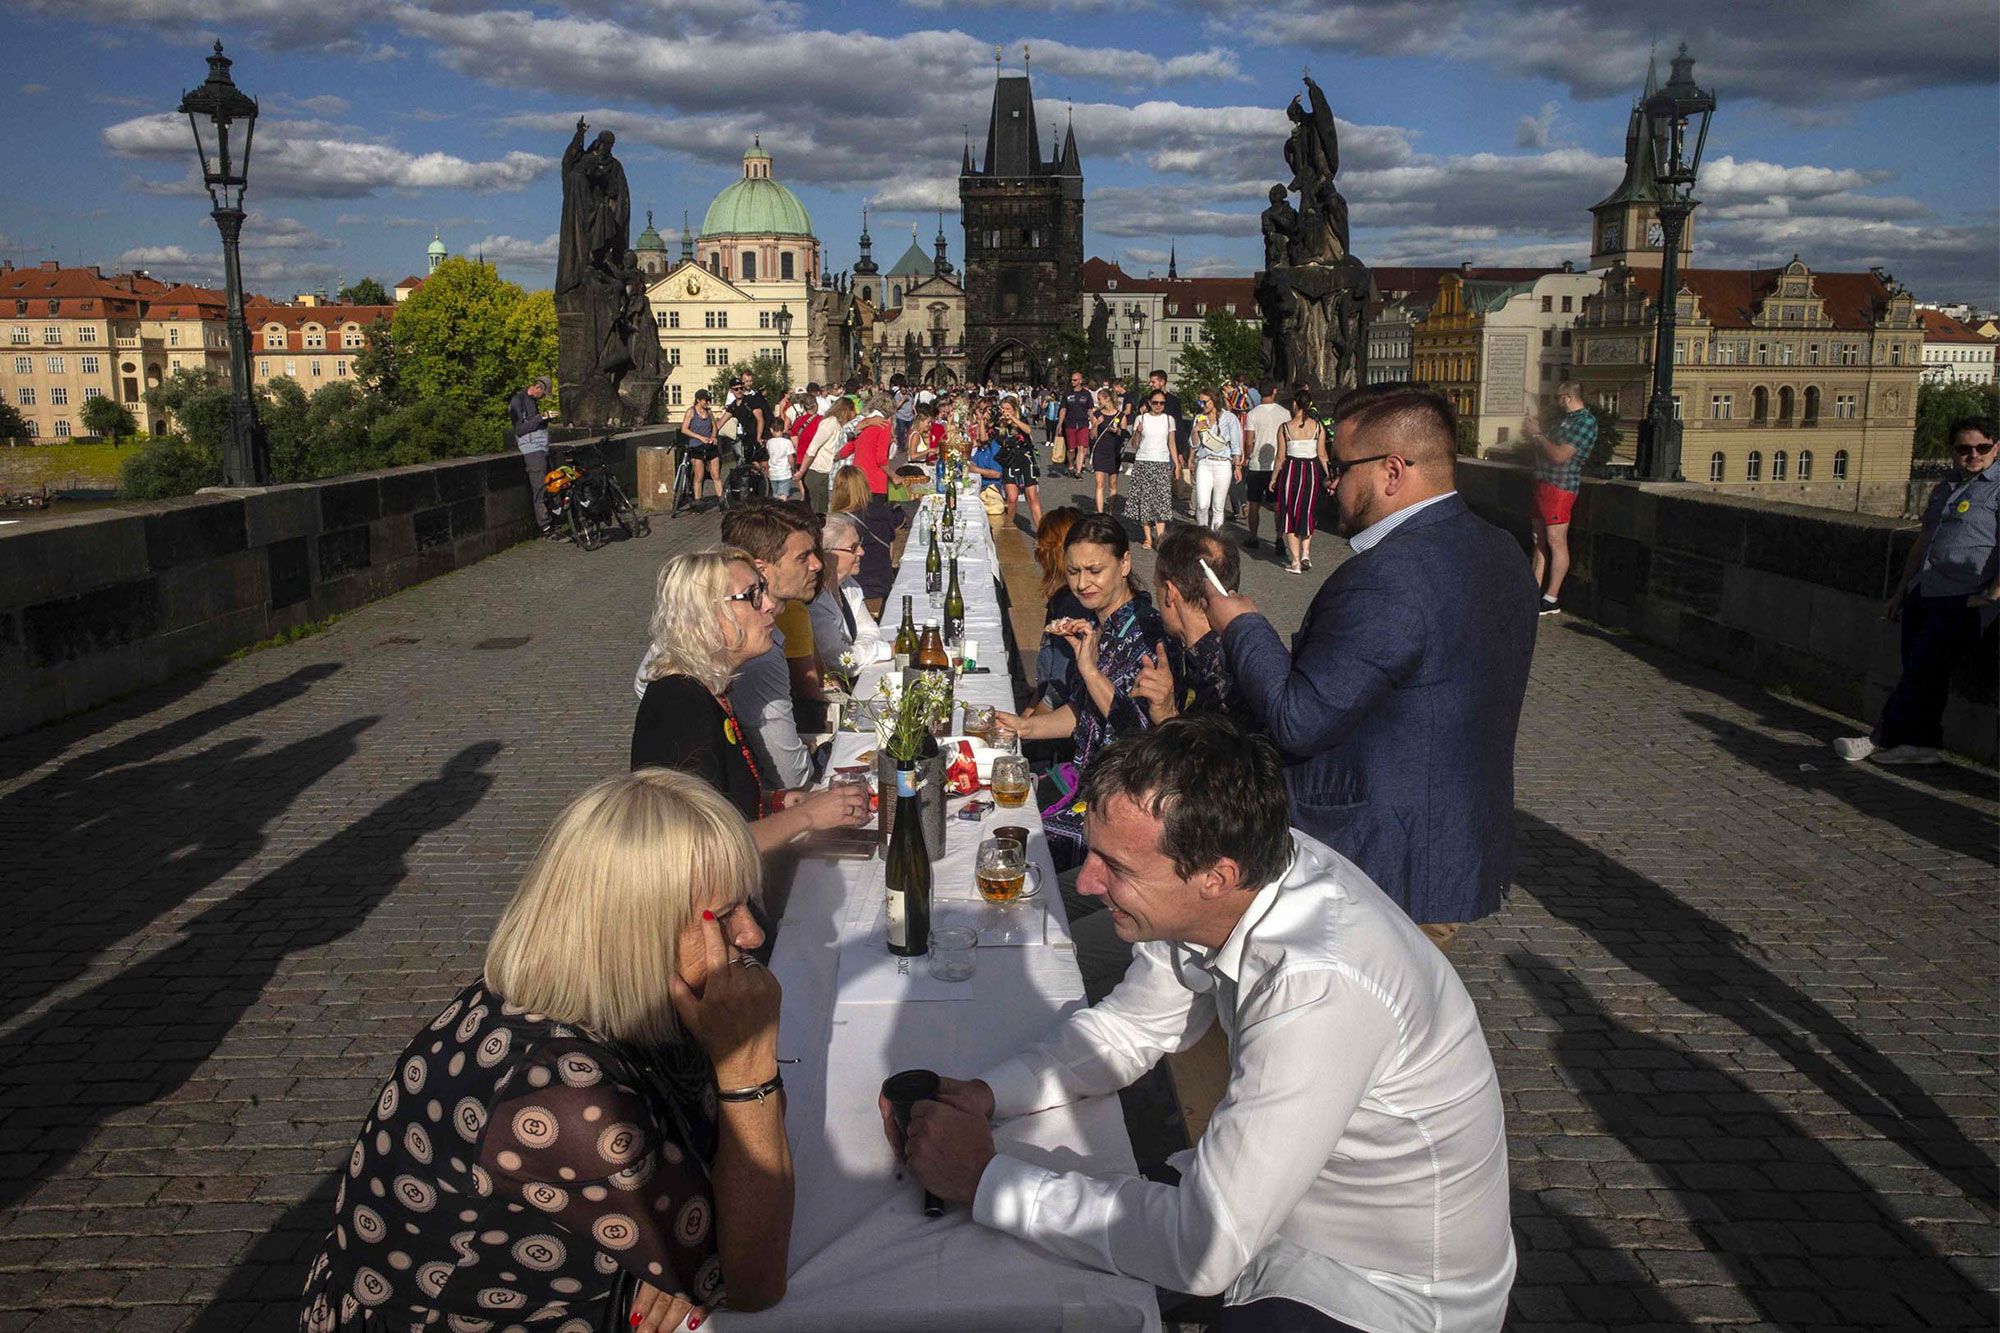 Huge dinner party in Czech republic